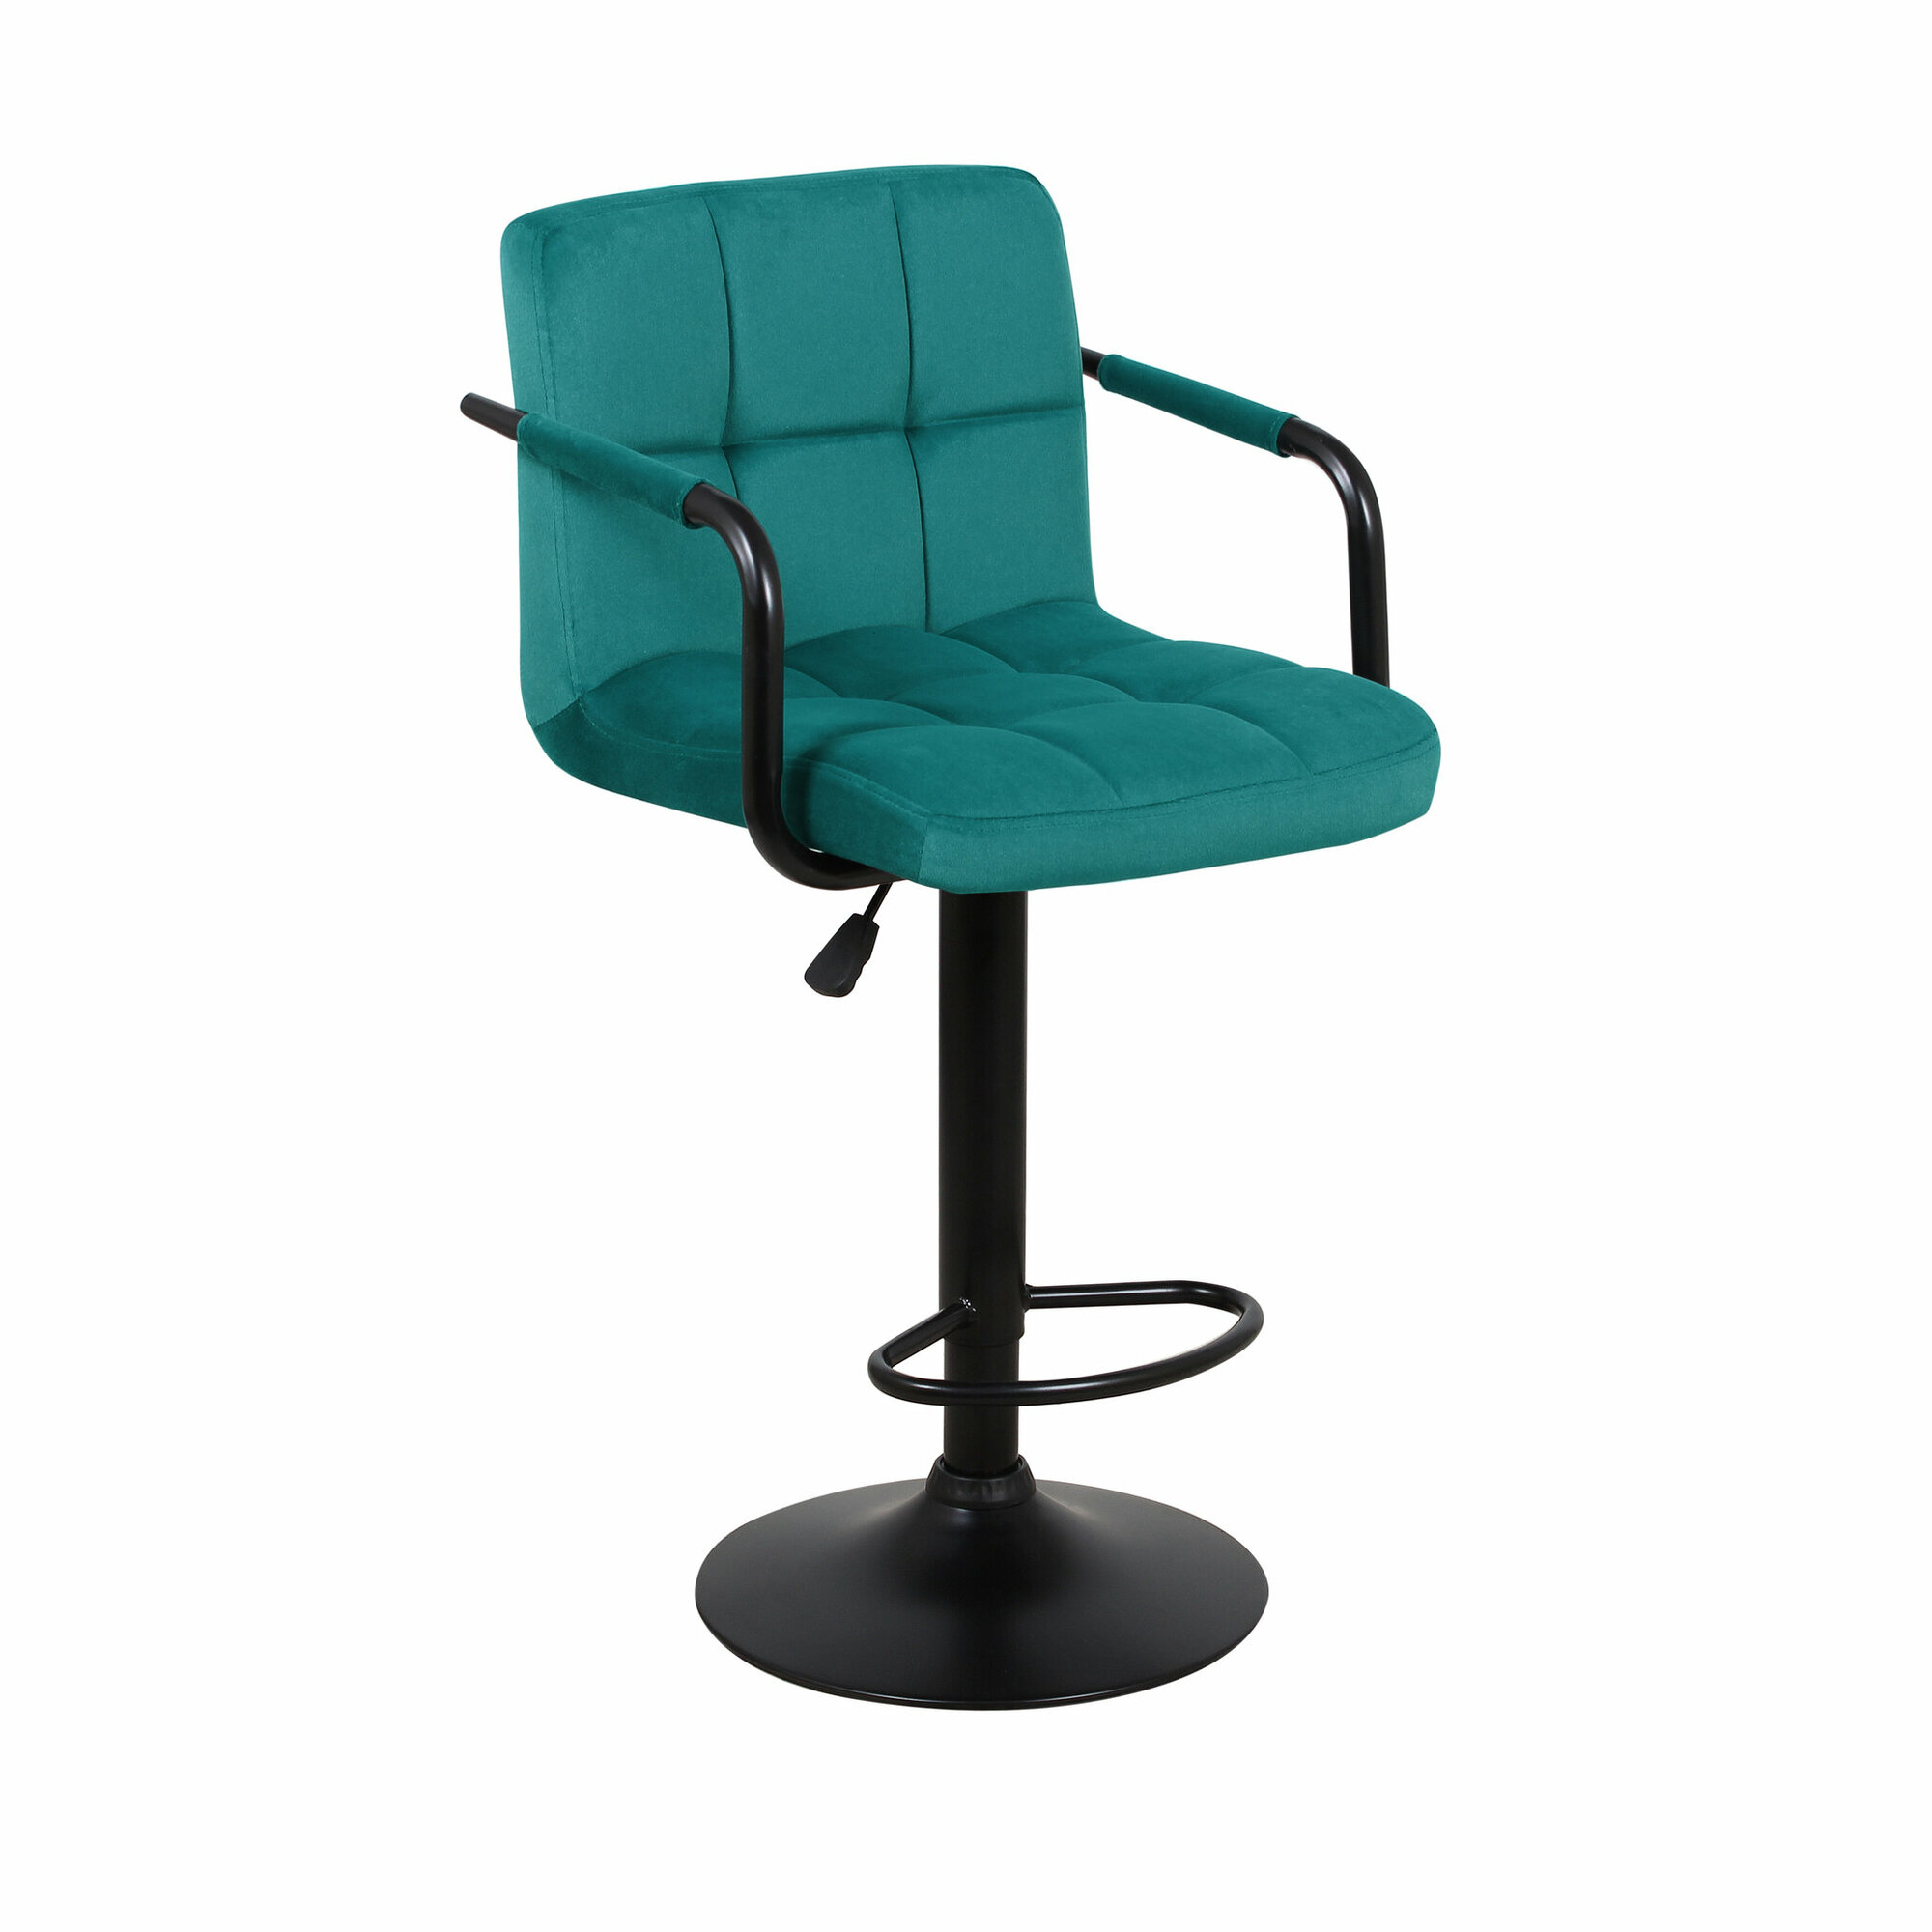 Стул барный ecoline Паркер АРМ WX-2319 цвет сиденья зеленый, цвет основания черный